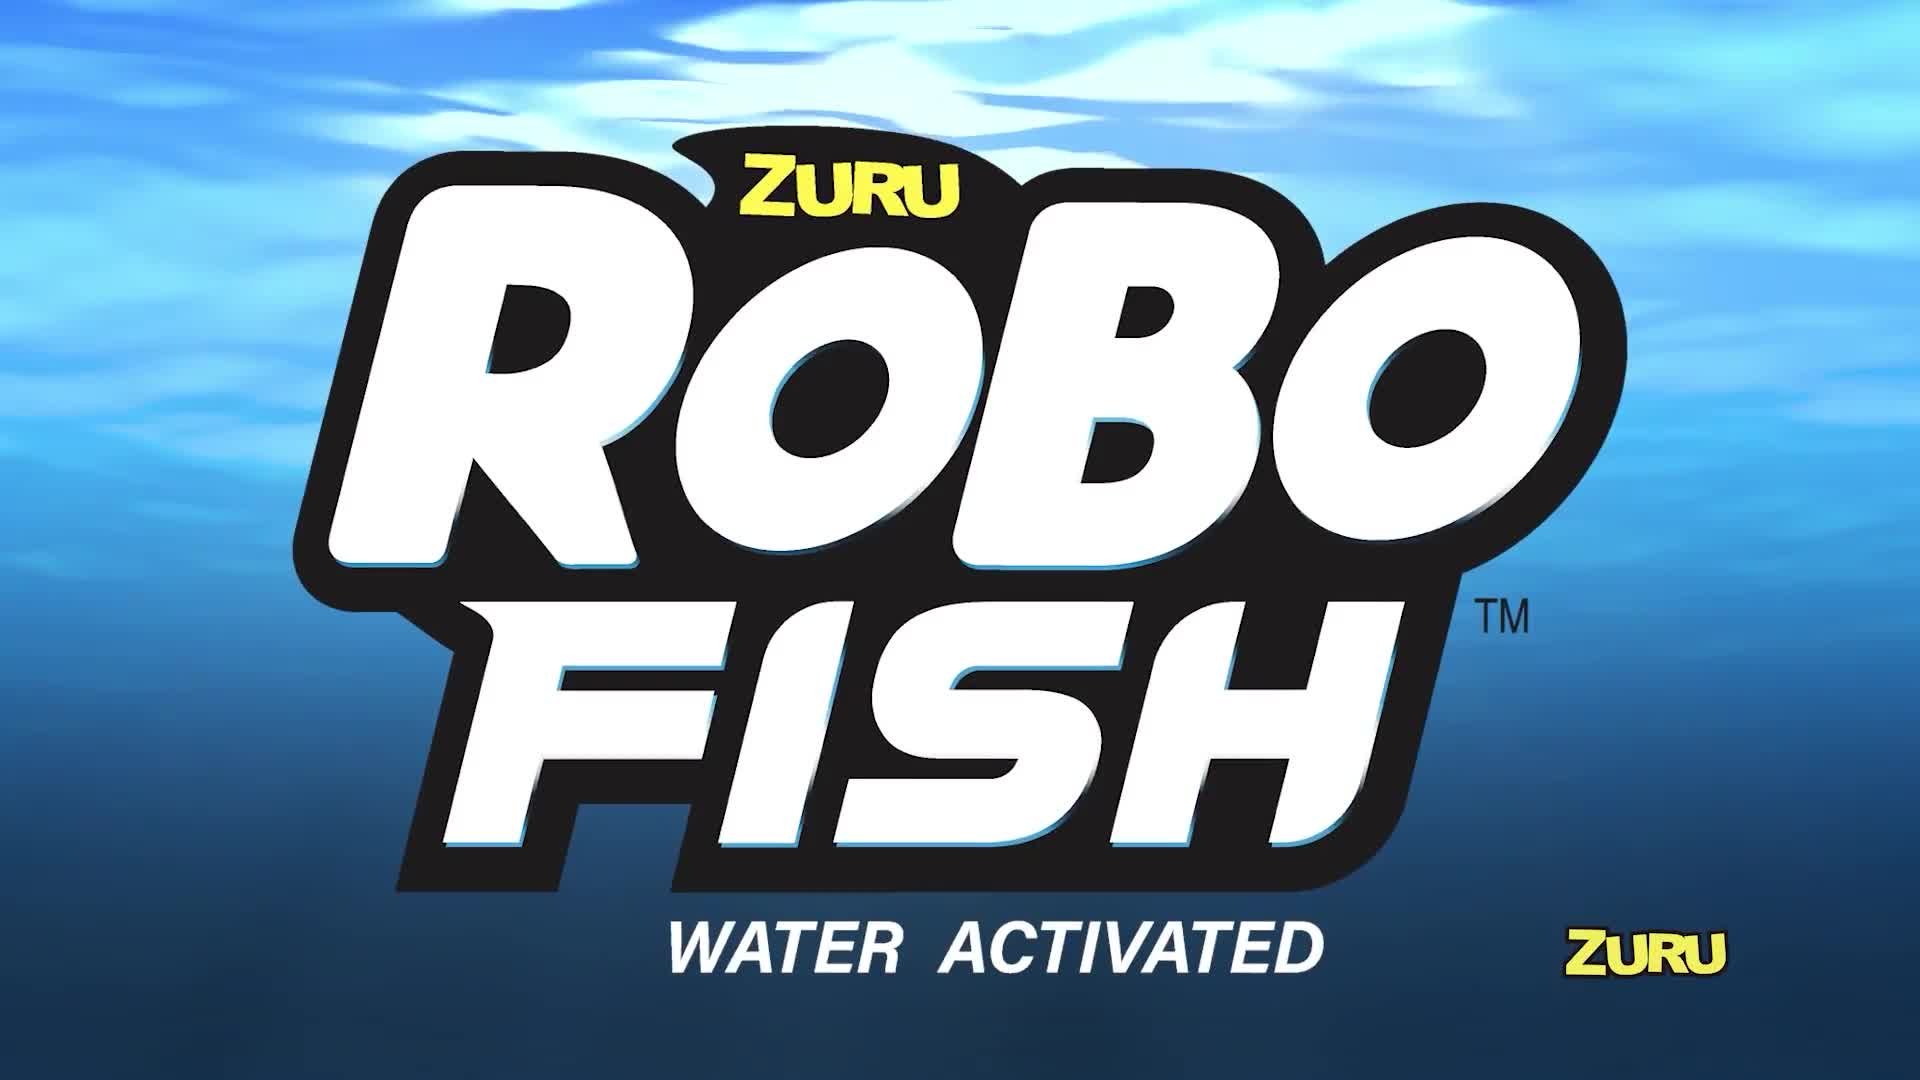 Buy Zuru Robo Alive Robotic Fish, Remote control vehicles